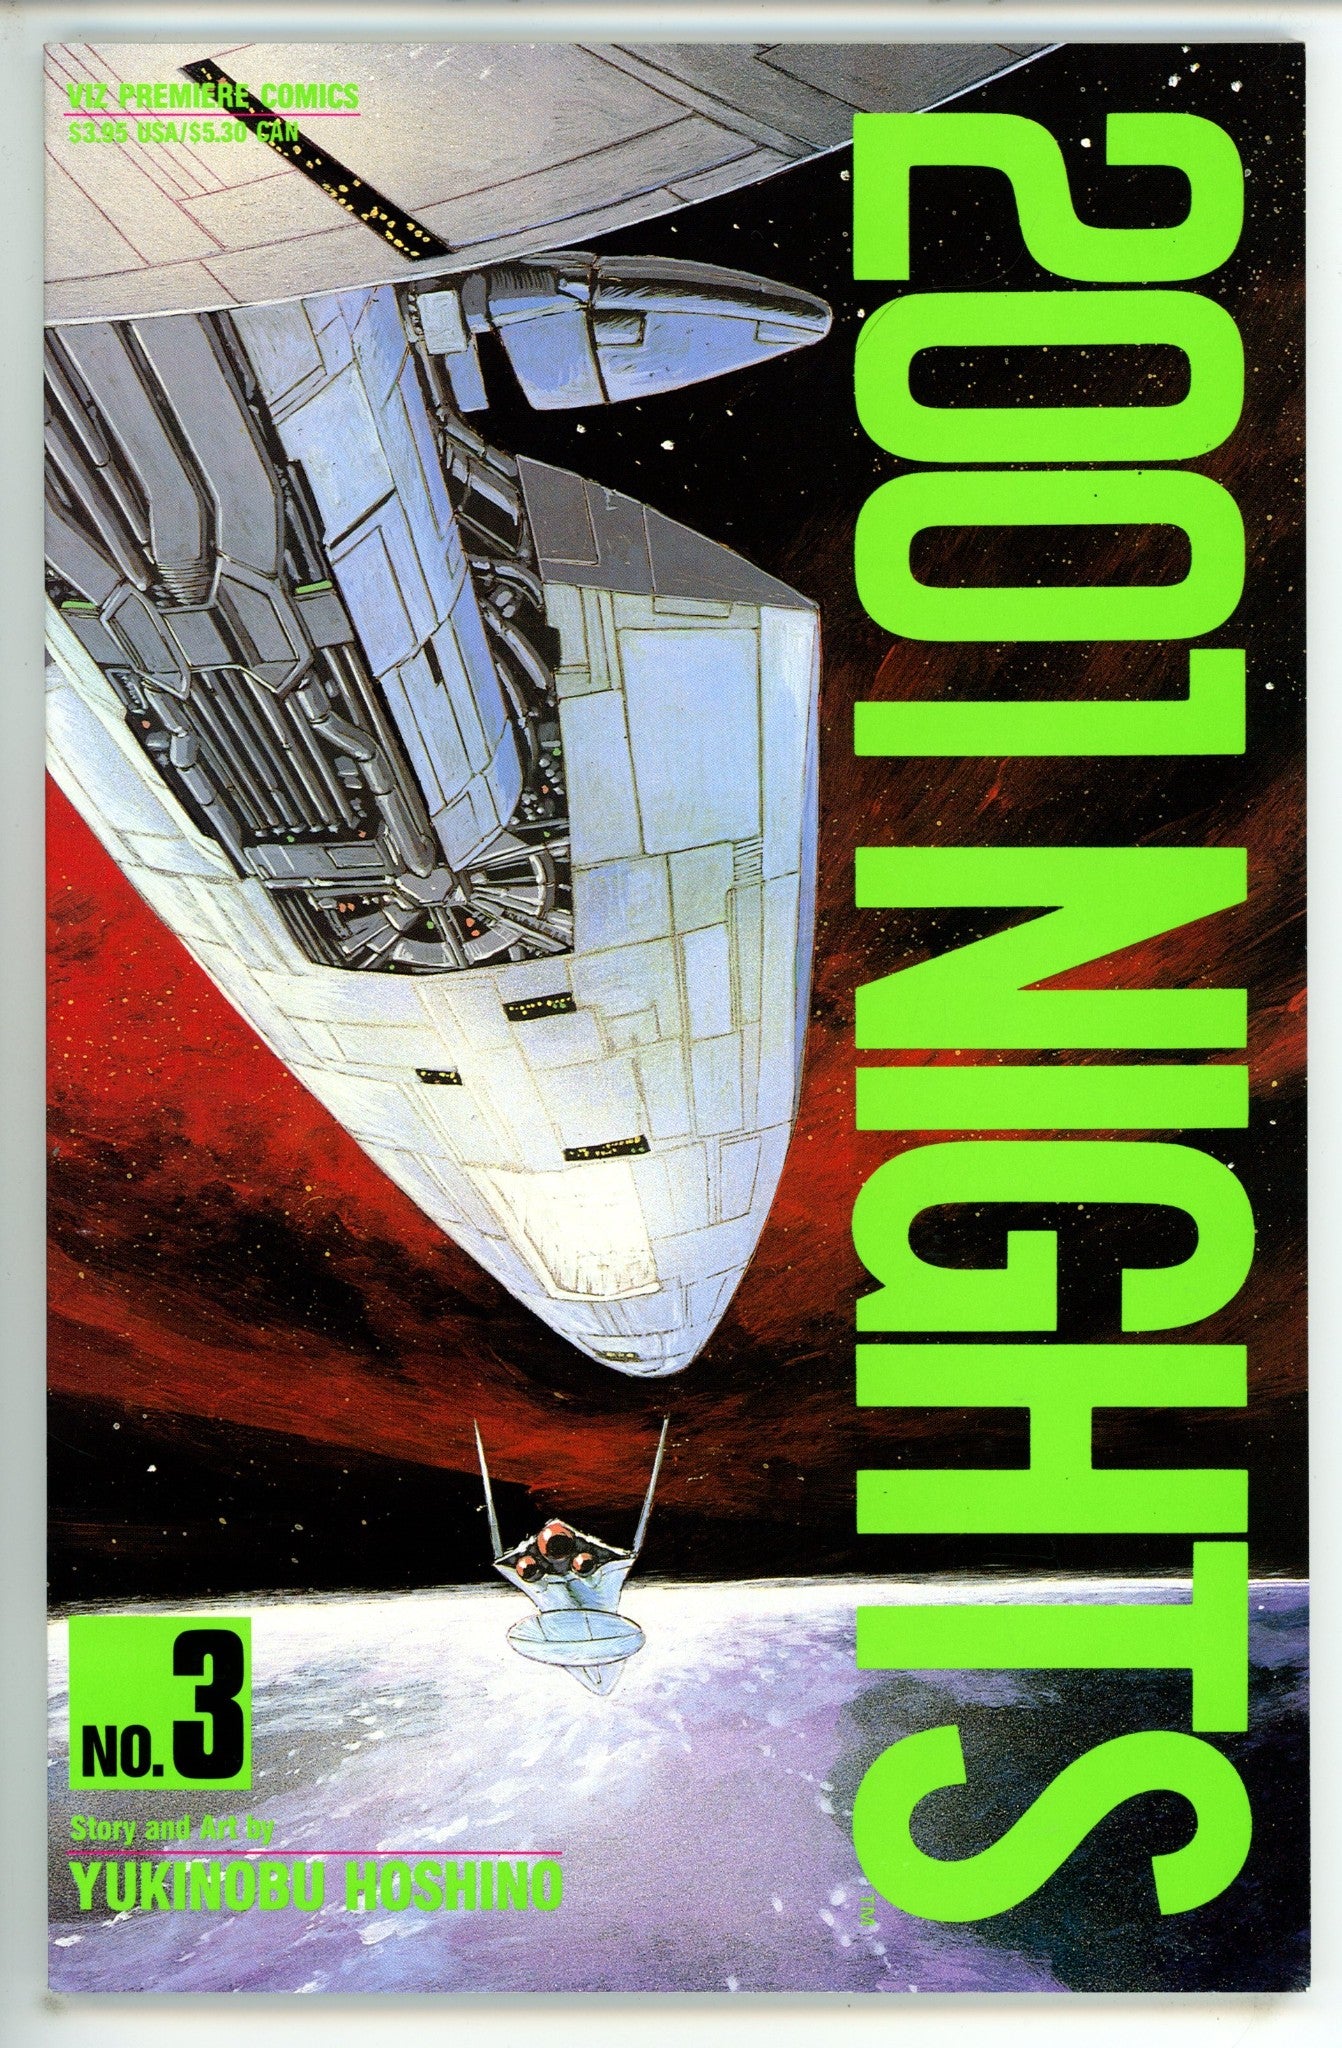 2001 Nights 3 (1990)